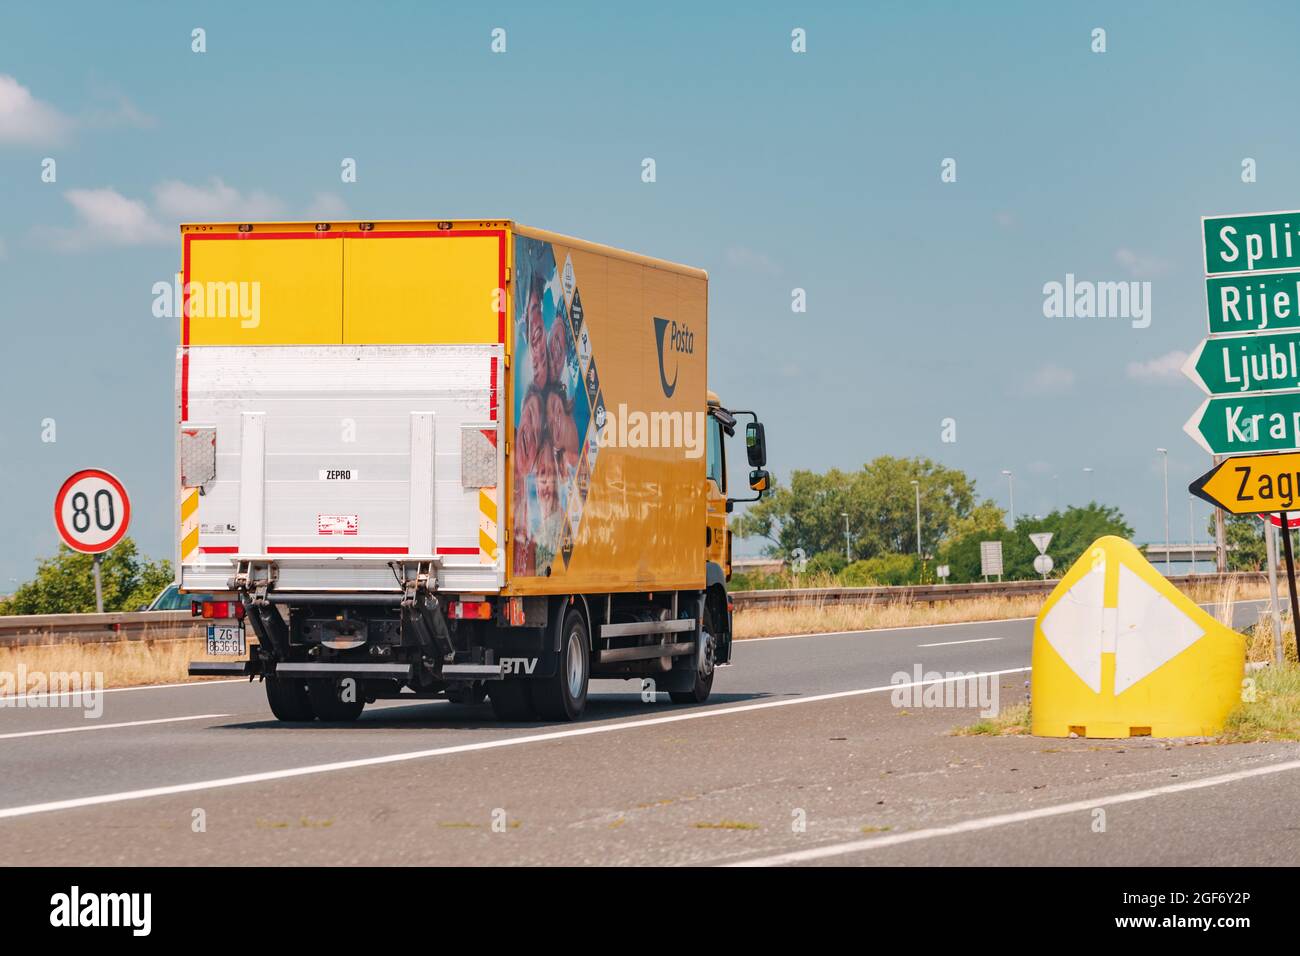 ZAGREB, CROATIE, JUILLET 20. 2021: Camion de livraison Croate Post (Hrvatska Posta) sur la route de Zagreb, illustration éditoriale. Poste croate norma Banque D'Images